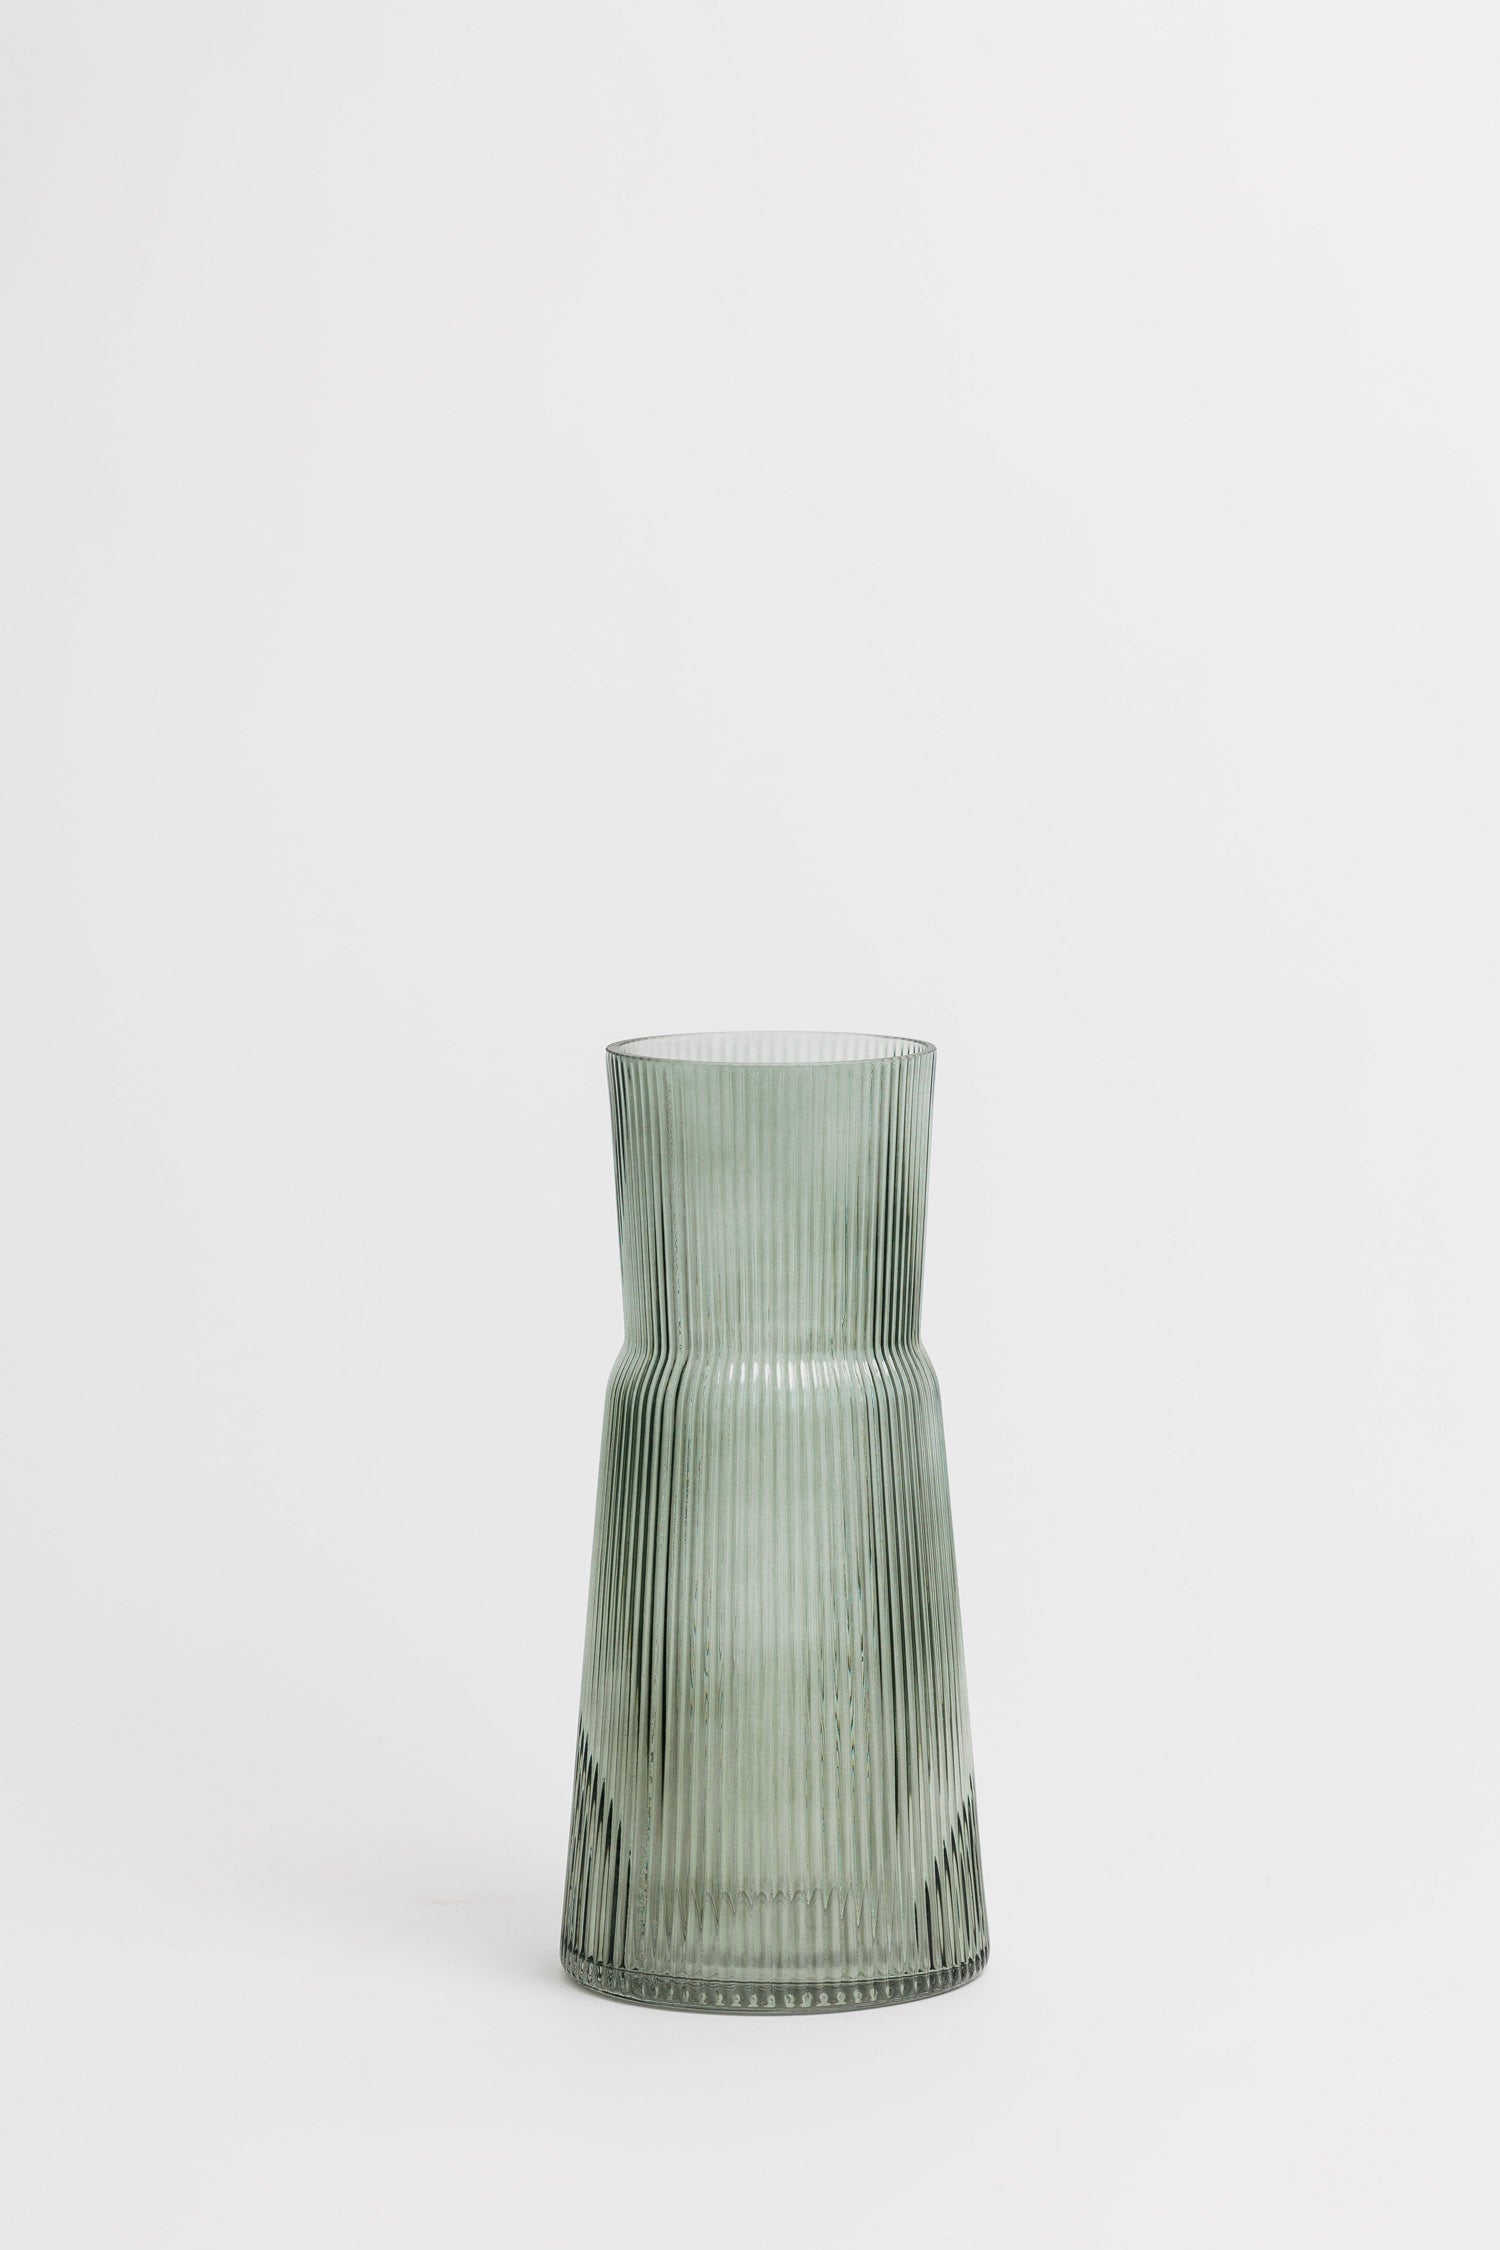 Plaza Ribbed Vase - 2 Styles